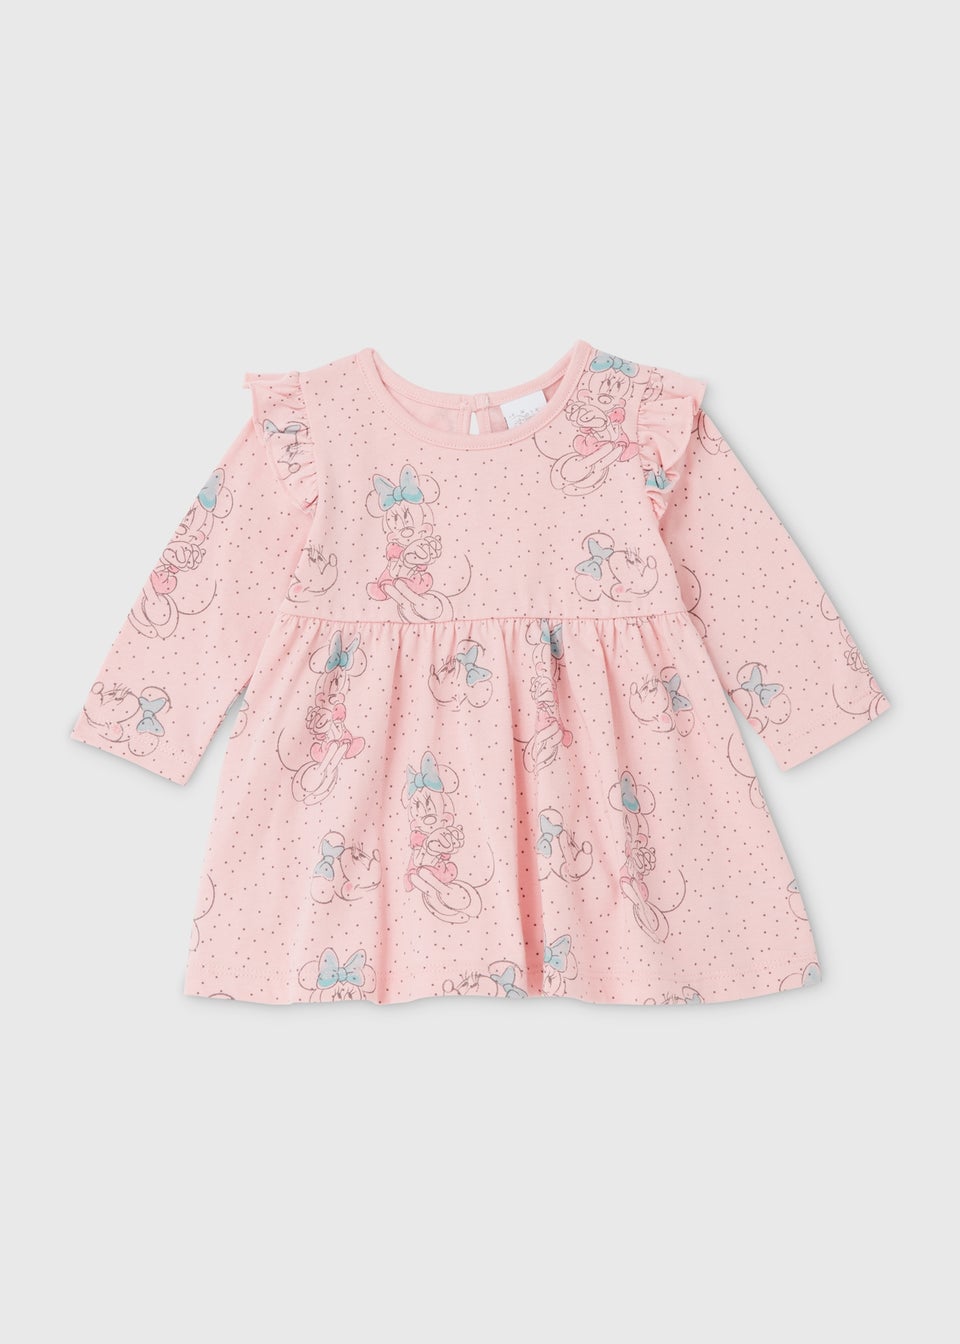 Girls Disney Minnie Mouse Pink Long Sleeve Dress (Newborn-23mths)